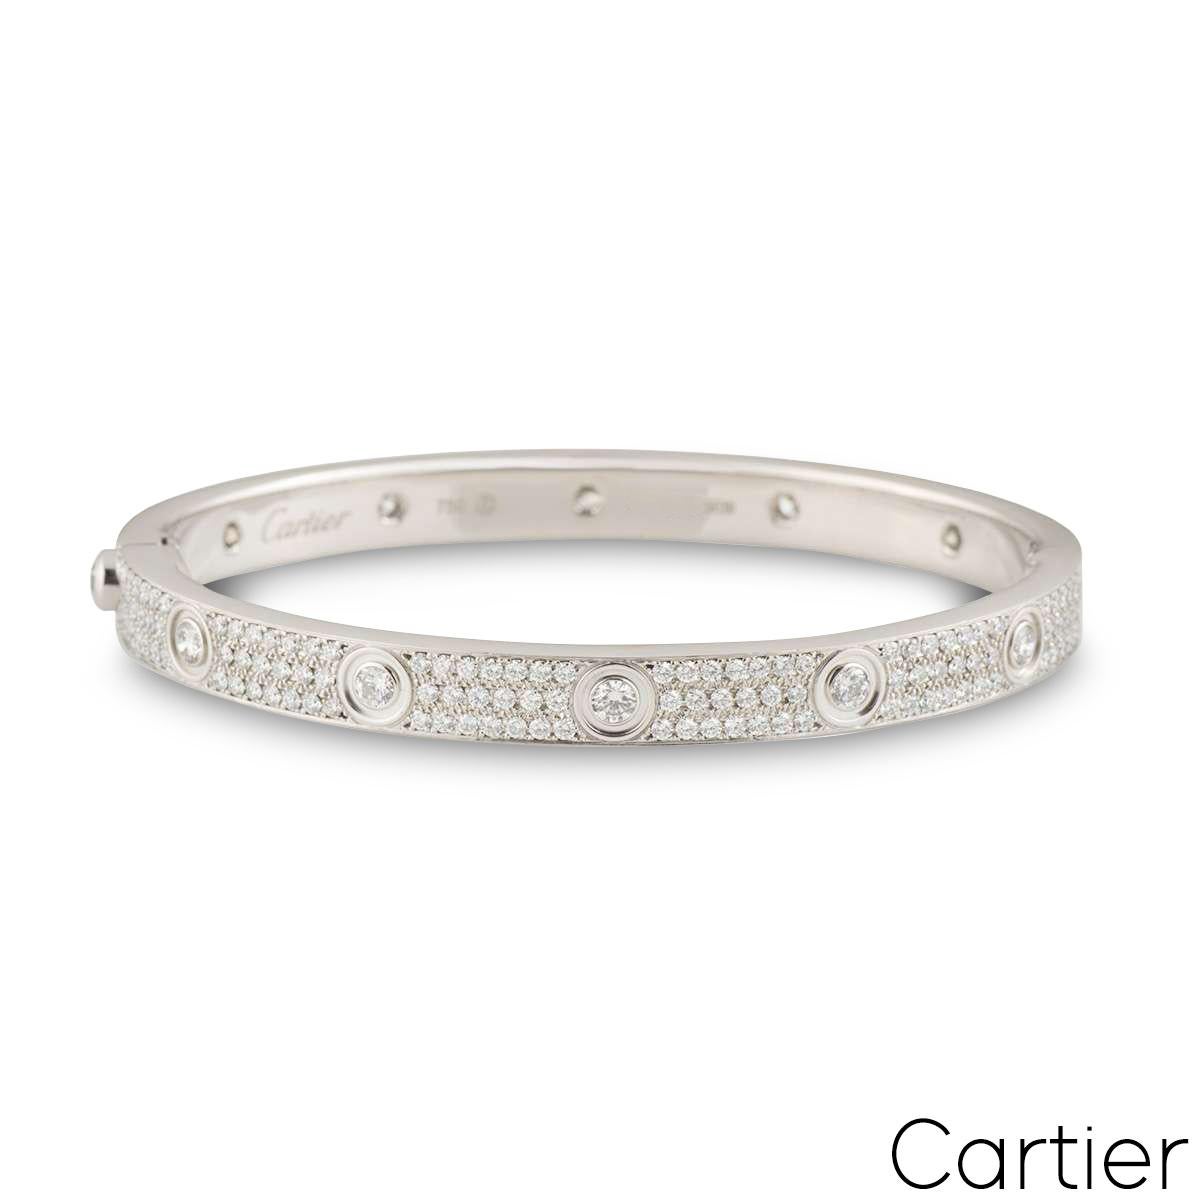 Ein wunderschönes Diamantarmband aus 18 Karat Weißgold von Cartier, aus der Collection'S Love. Das Armband hat 12 runde Diamanten im Brillantschliff am äußeren Rand und 216 runde Diamanten im Brillantschliff, die zwischen dem ikonischen